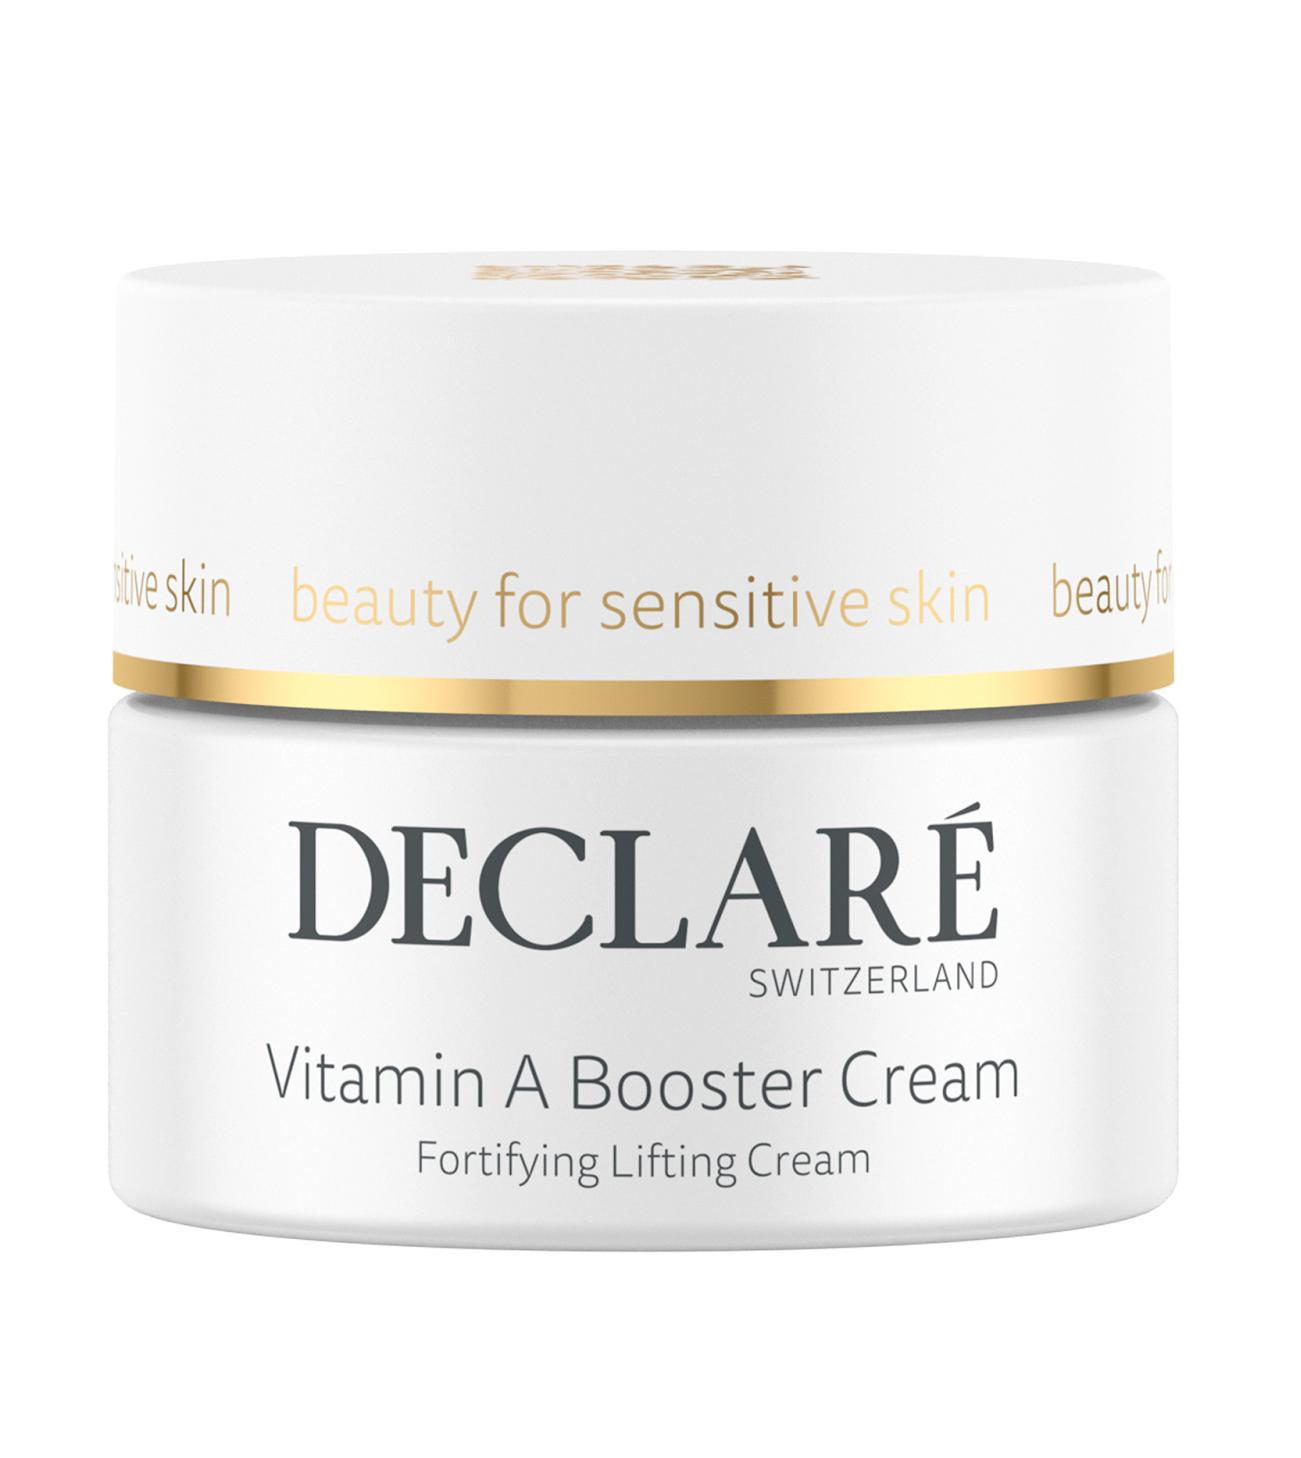 Declare Vitamin A Booster Cream 50ml - интернет-магазин профессиональной косметики Spadream, изображение 50880